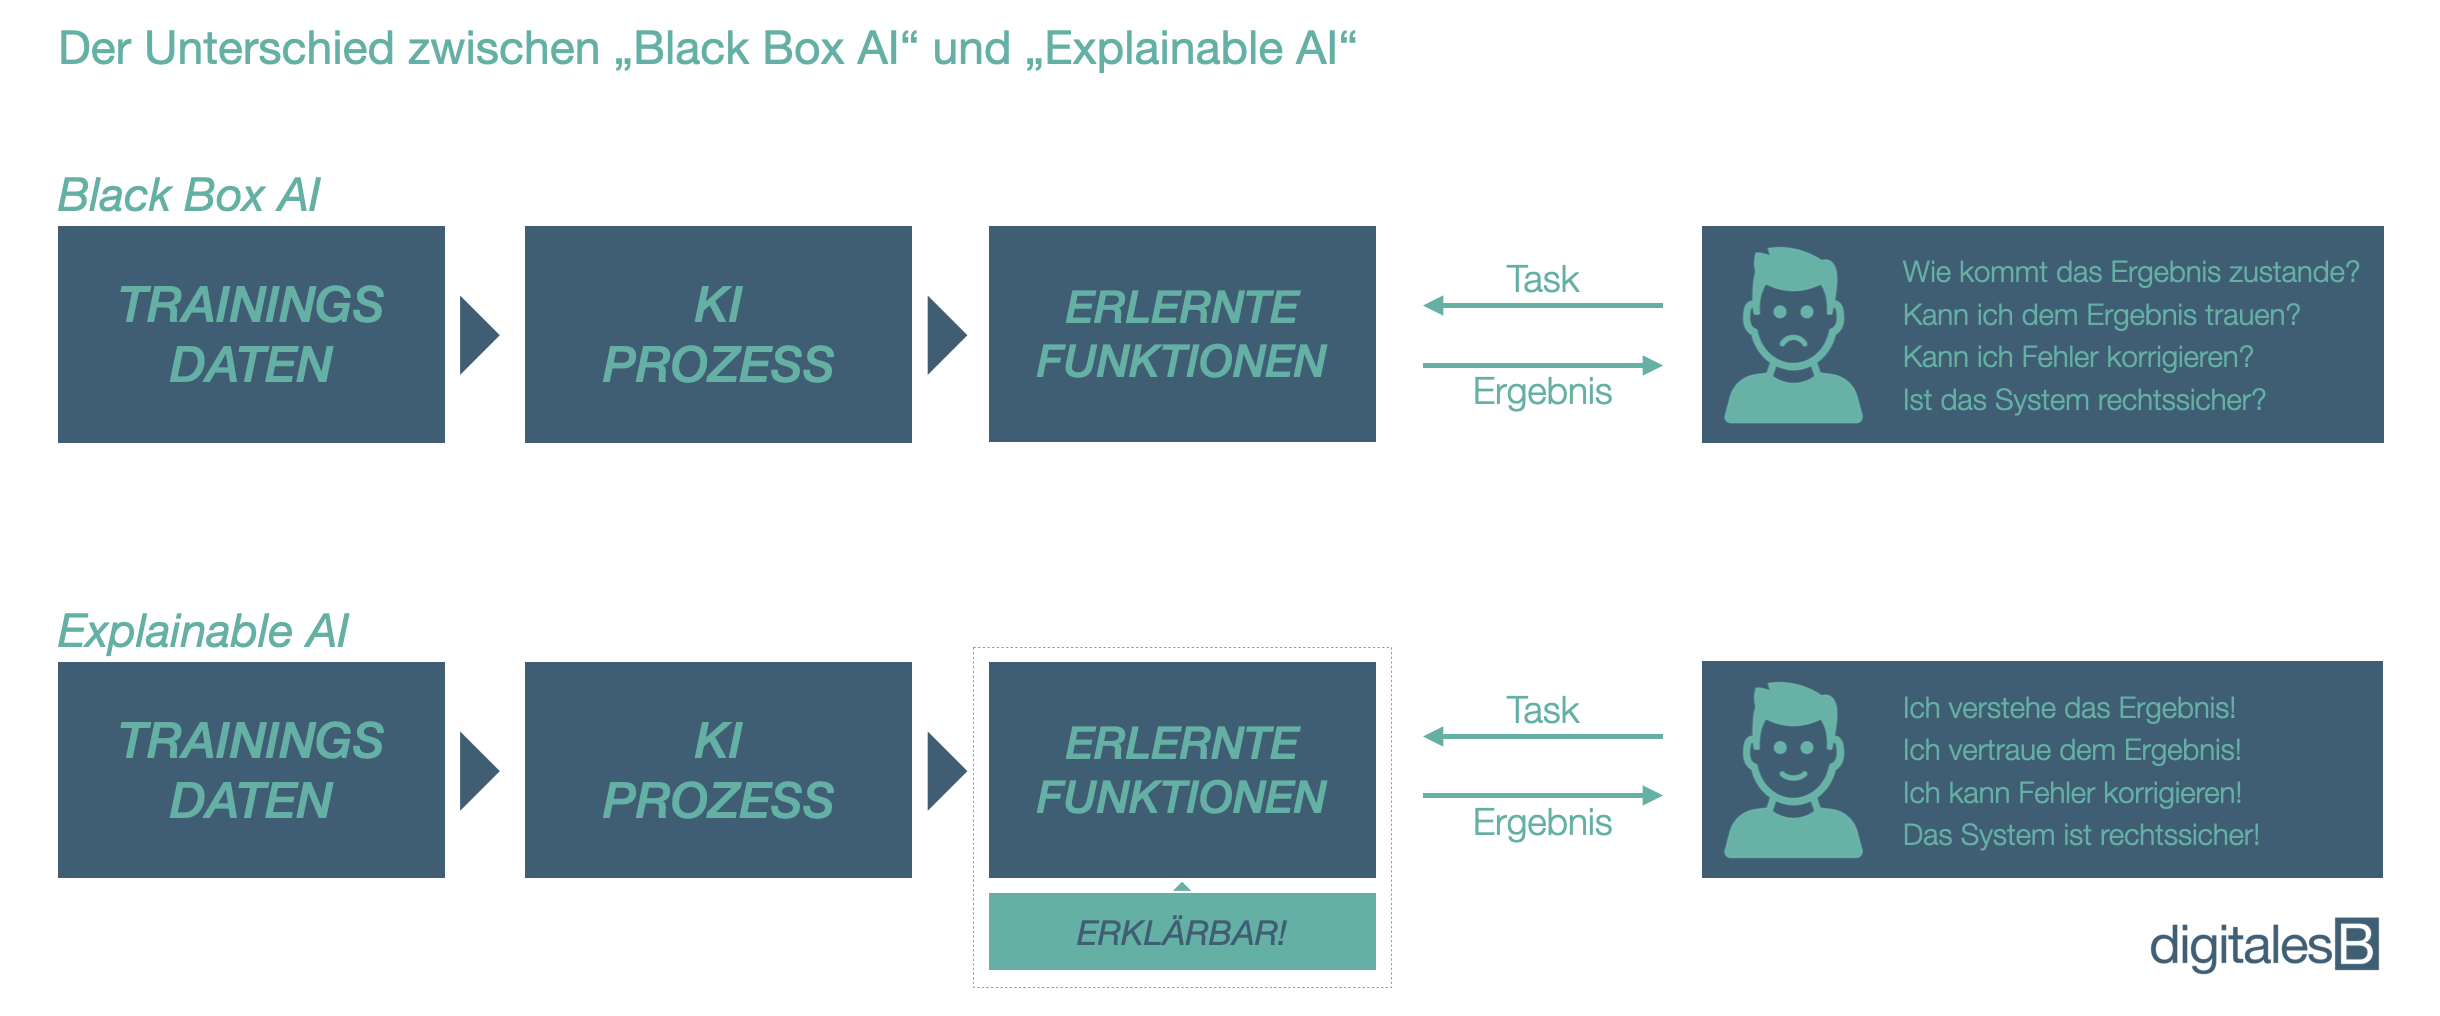 Der Unterschied zwischen Black Box AI und Explainable AI